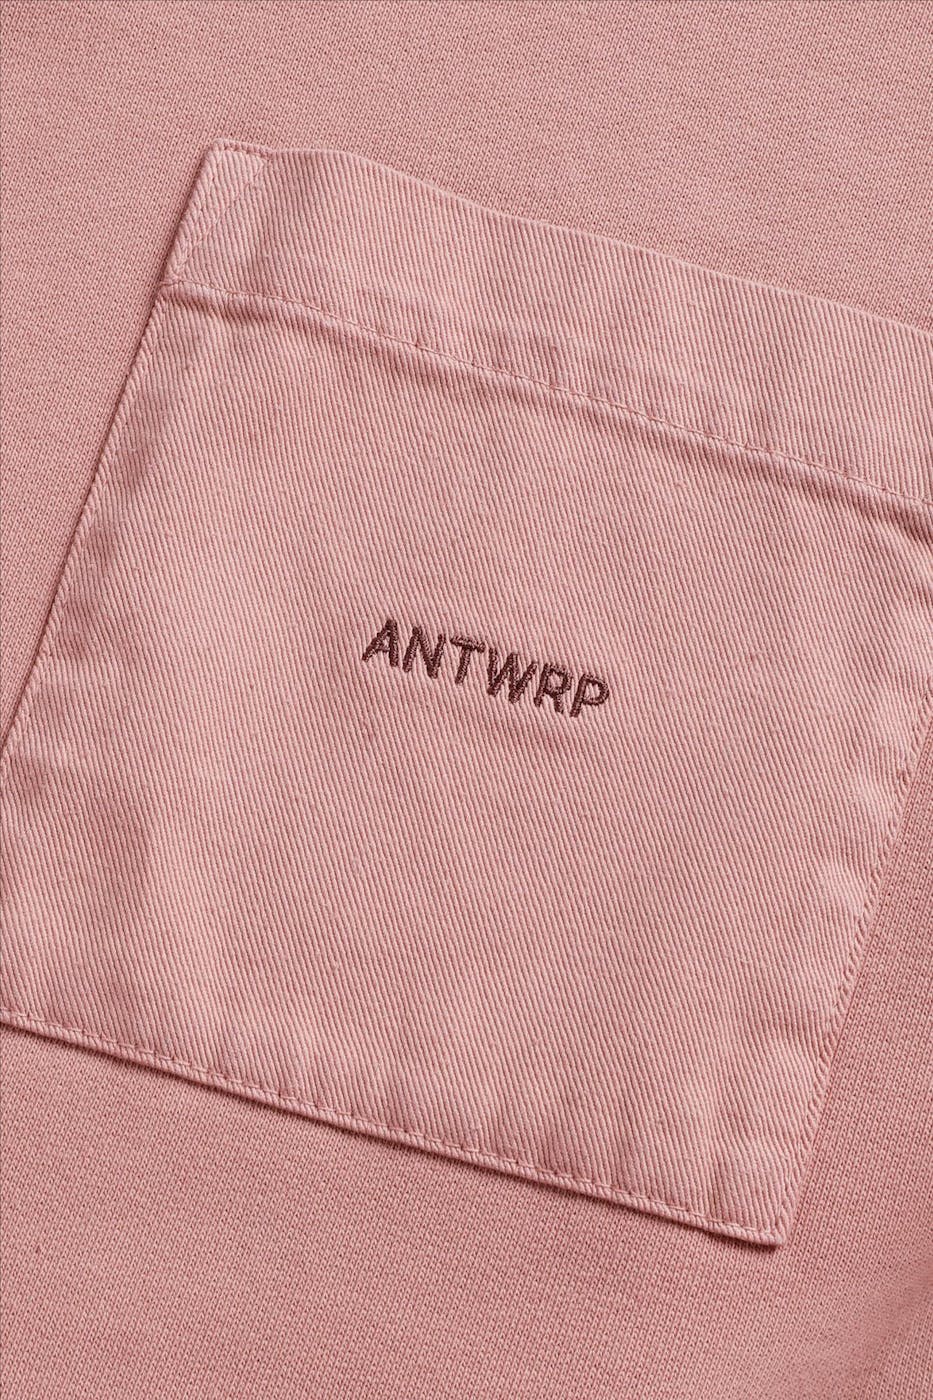 Antwrp - Koraal Chest Pocket sweater